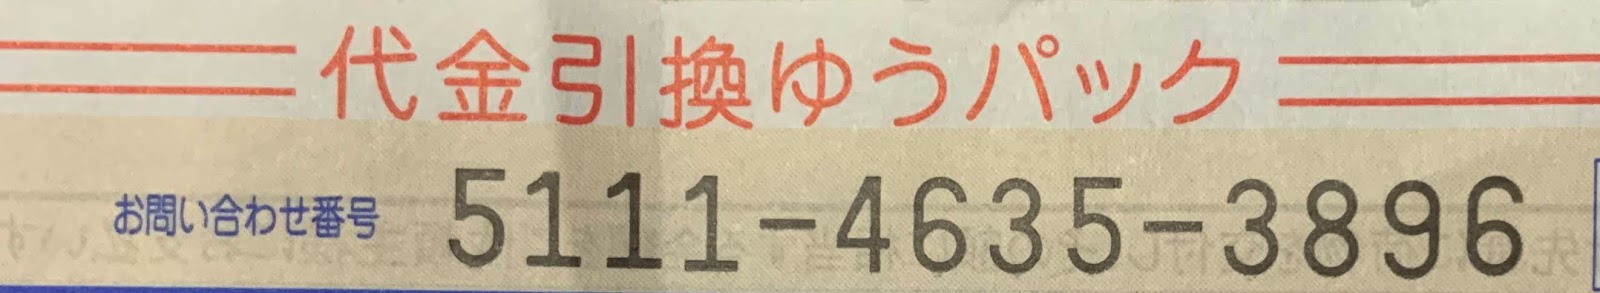 Cách kiểm tra bưu phẩm gửi đi ở Nhật Bản diiho.com